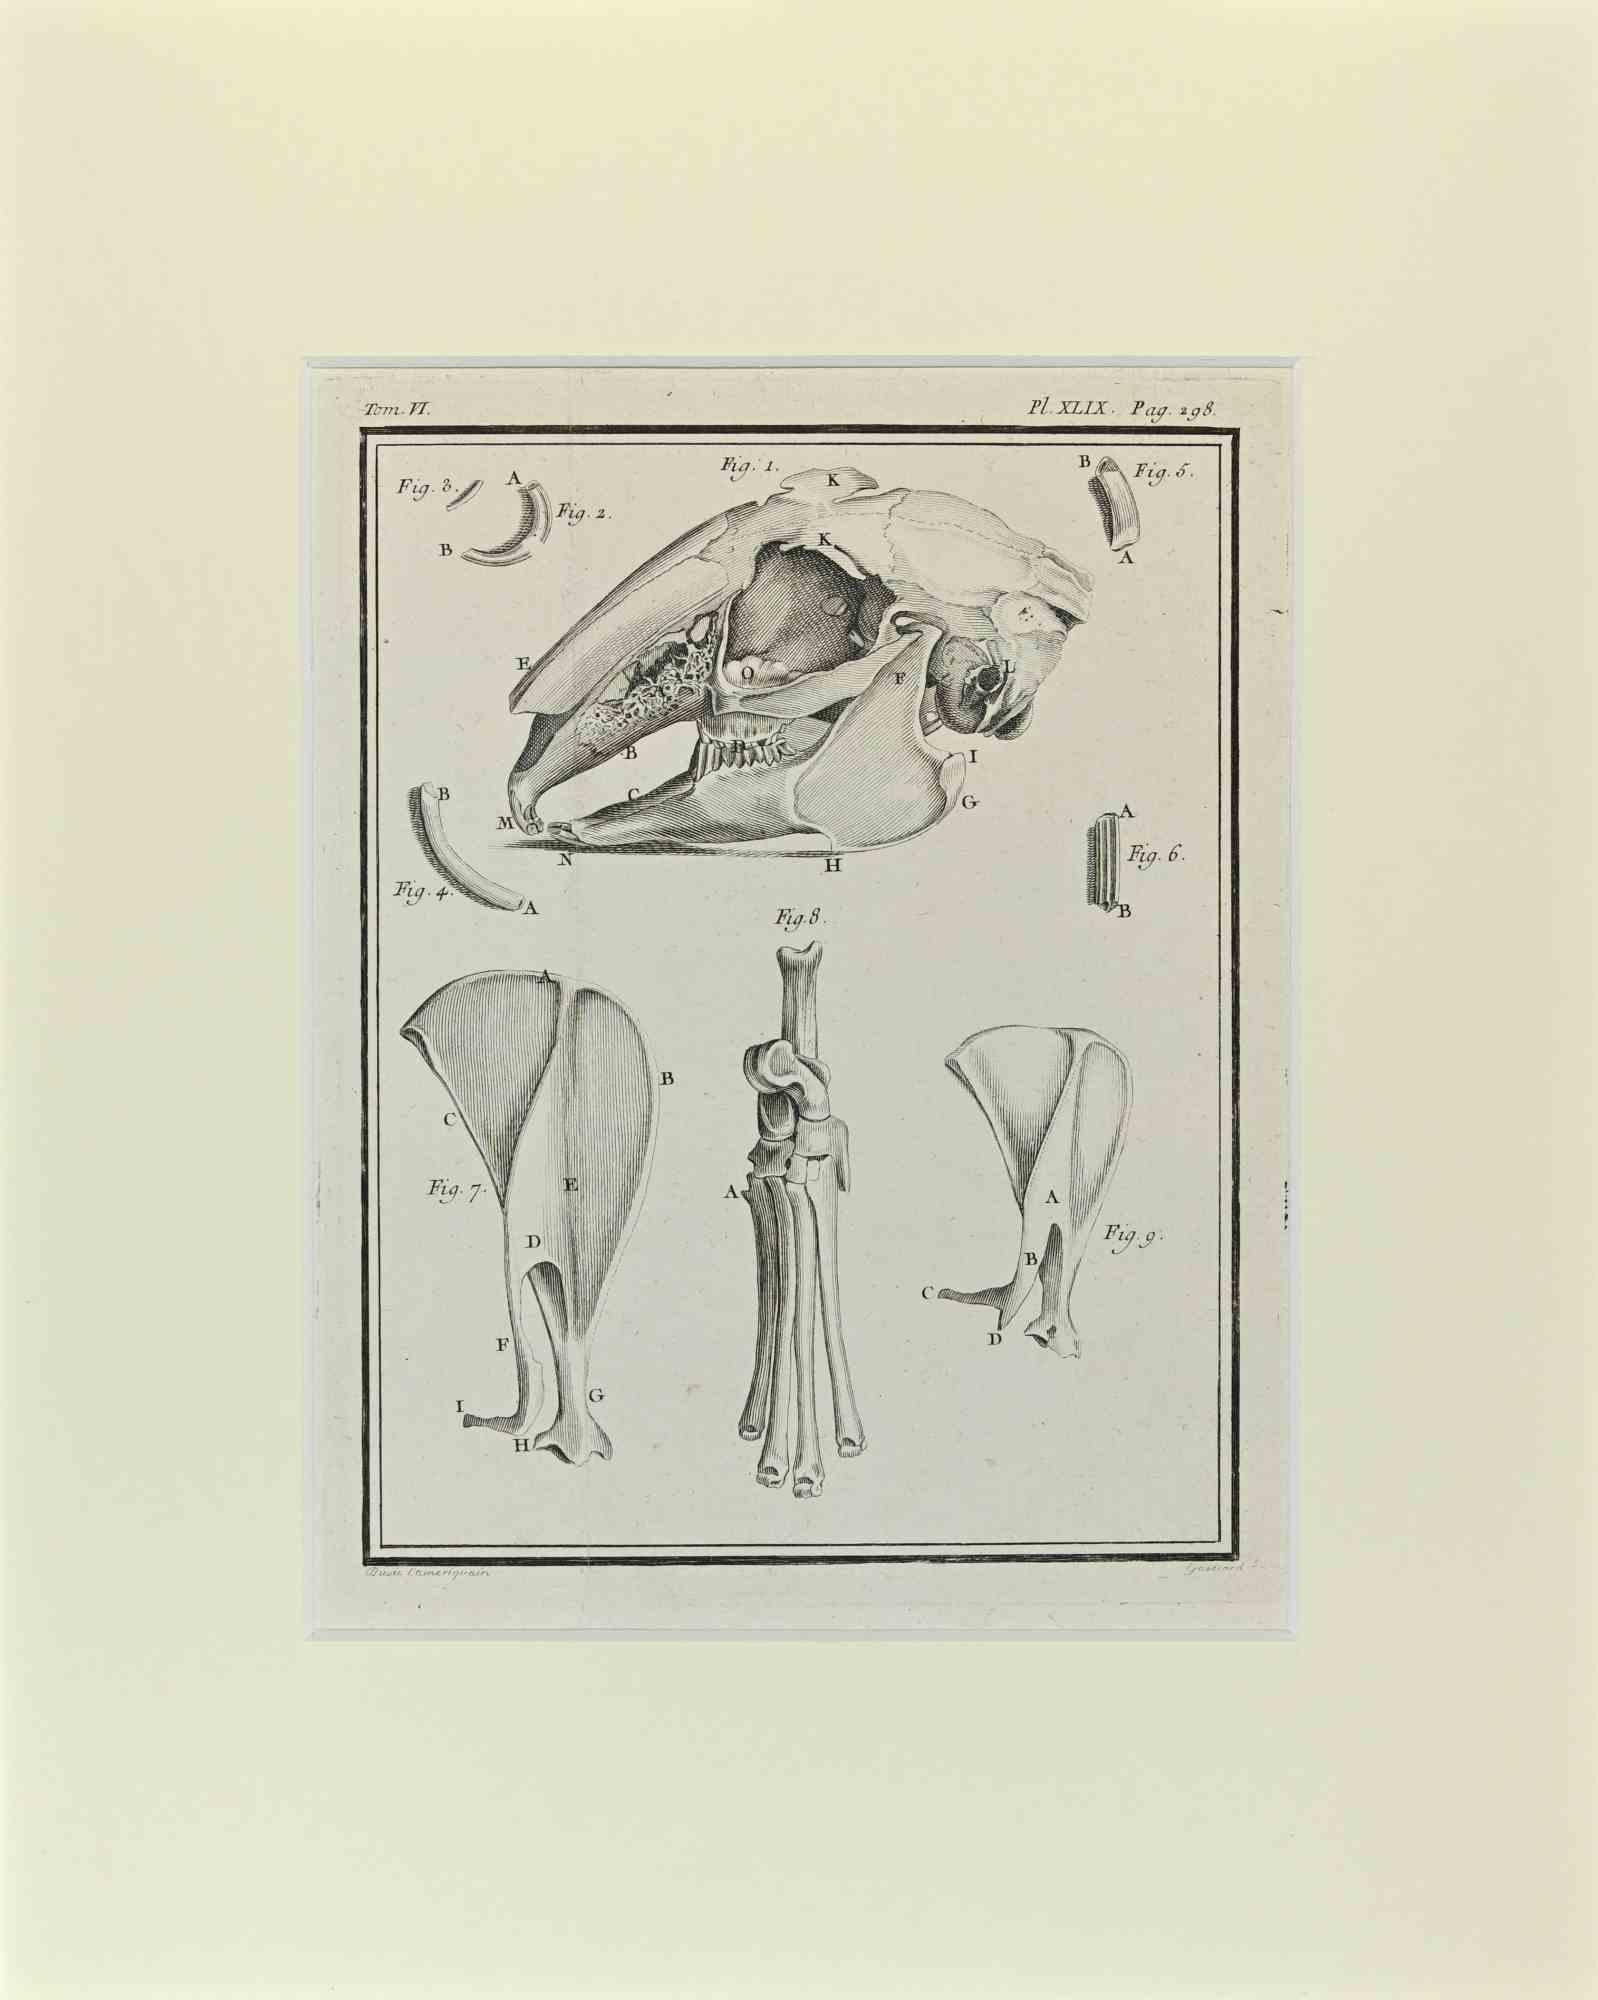 Le Squelette de lapin est une œuvre d'art réalisée par Buvée l'Américain en 1771.  

Gravure à l'eau-forte B./W. sur papier ivoire. Signé sur la plaque dans la marge inférieure gauche.

L'œuvre est collée sur du carton. Dimensions totales : 35x28